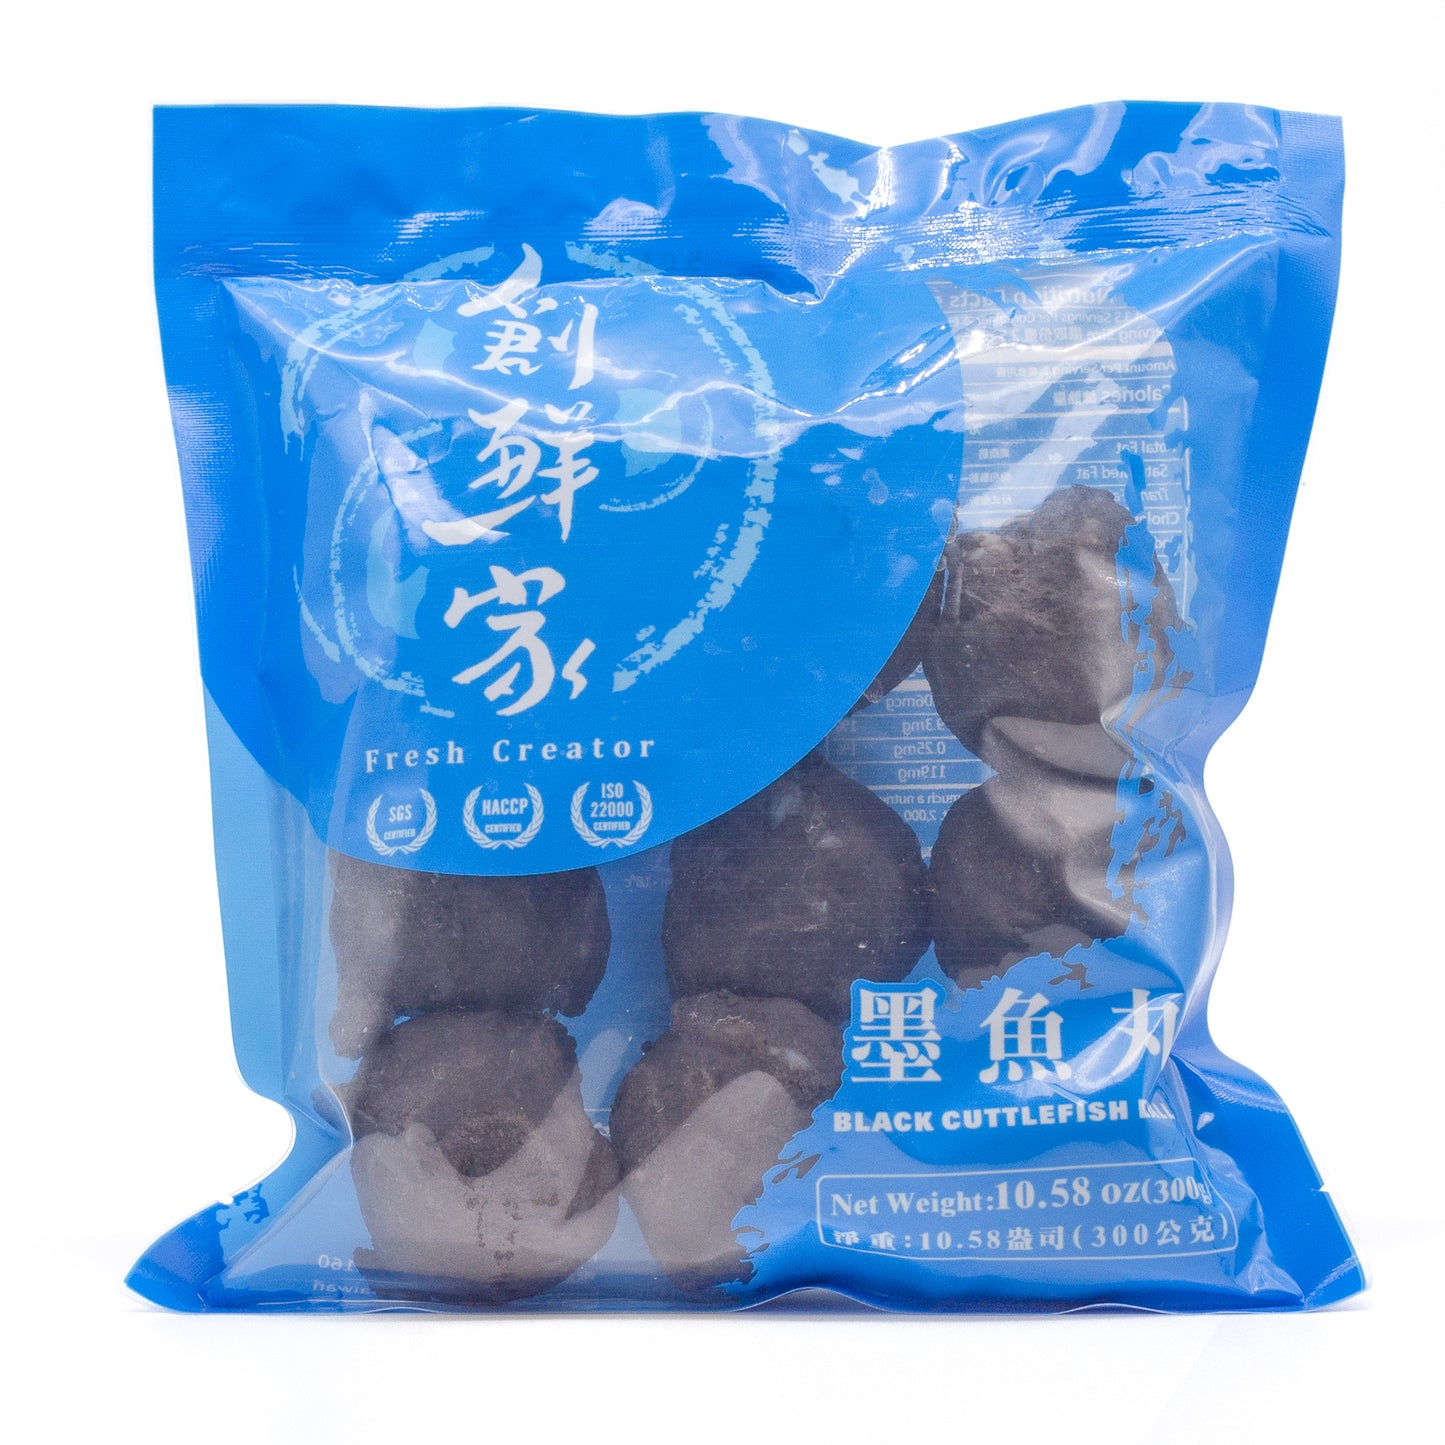 Black Cuttlefish Balls营养丰富墨鱼丸 (10.58 OZ)